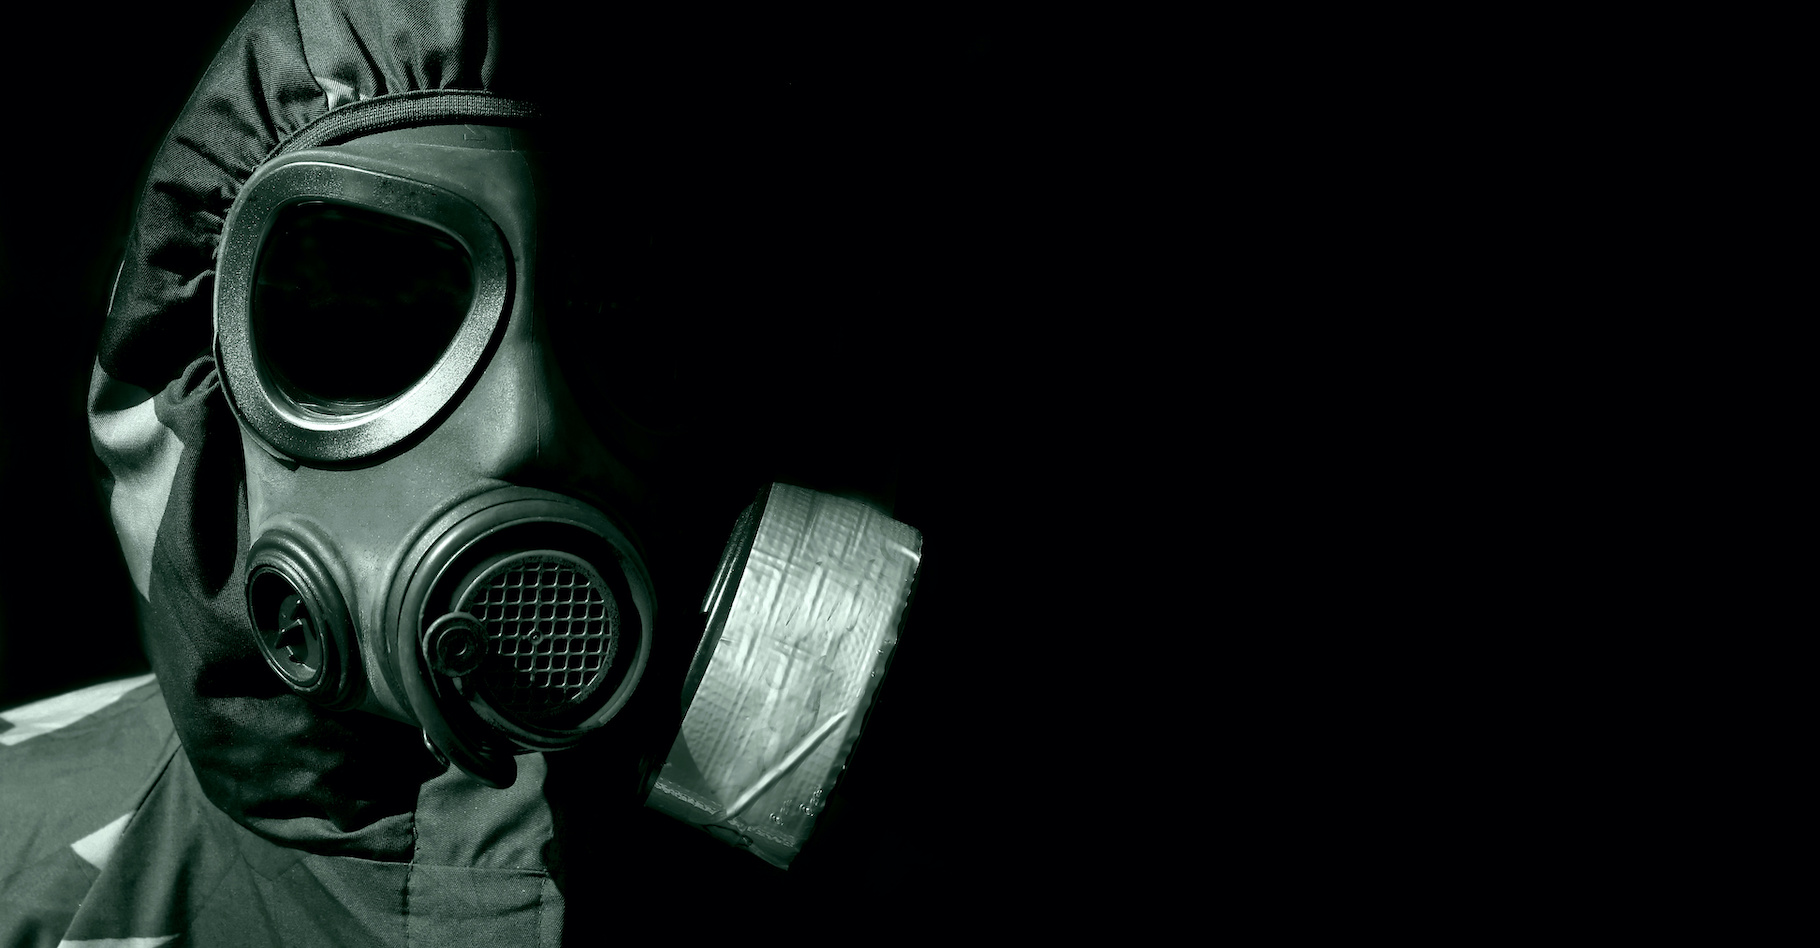 Alors que certains développaient des armes chimiques, d’autres travaillaient à la mise au point d’équipements permettant de s’en protéger. Comme les masques à gaz. © Andreas Gradin, Adobe Stock